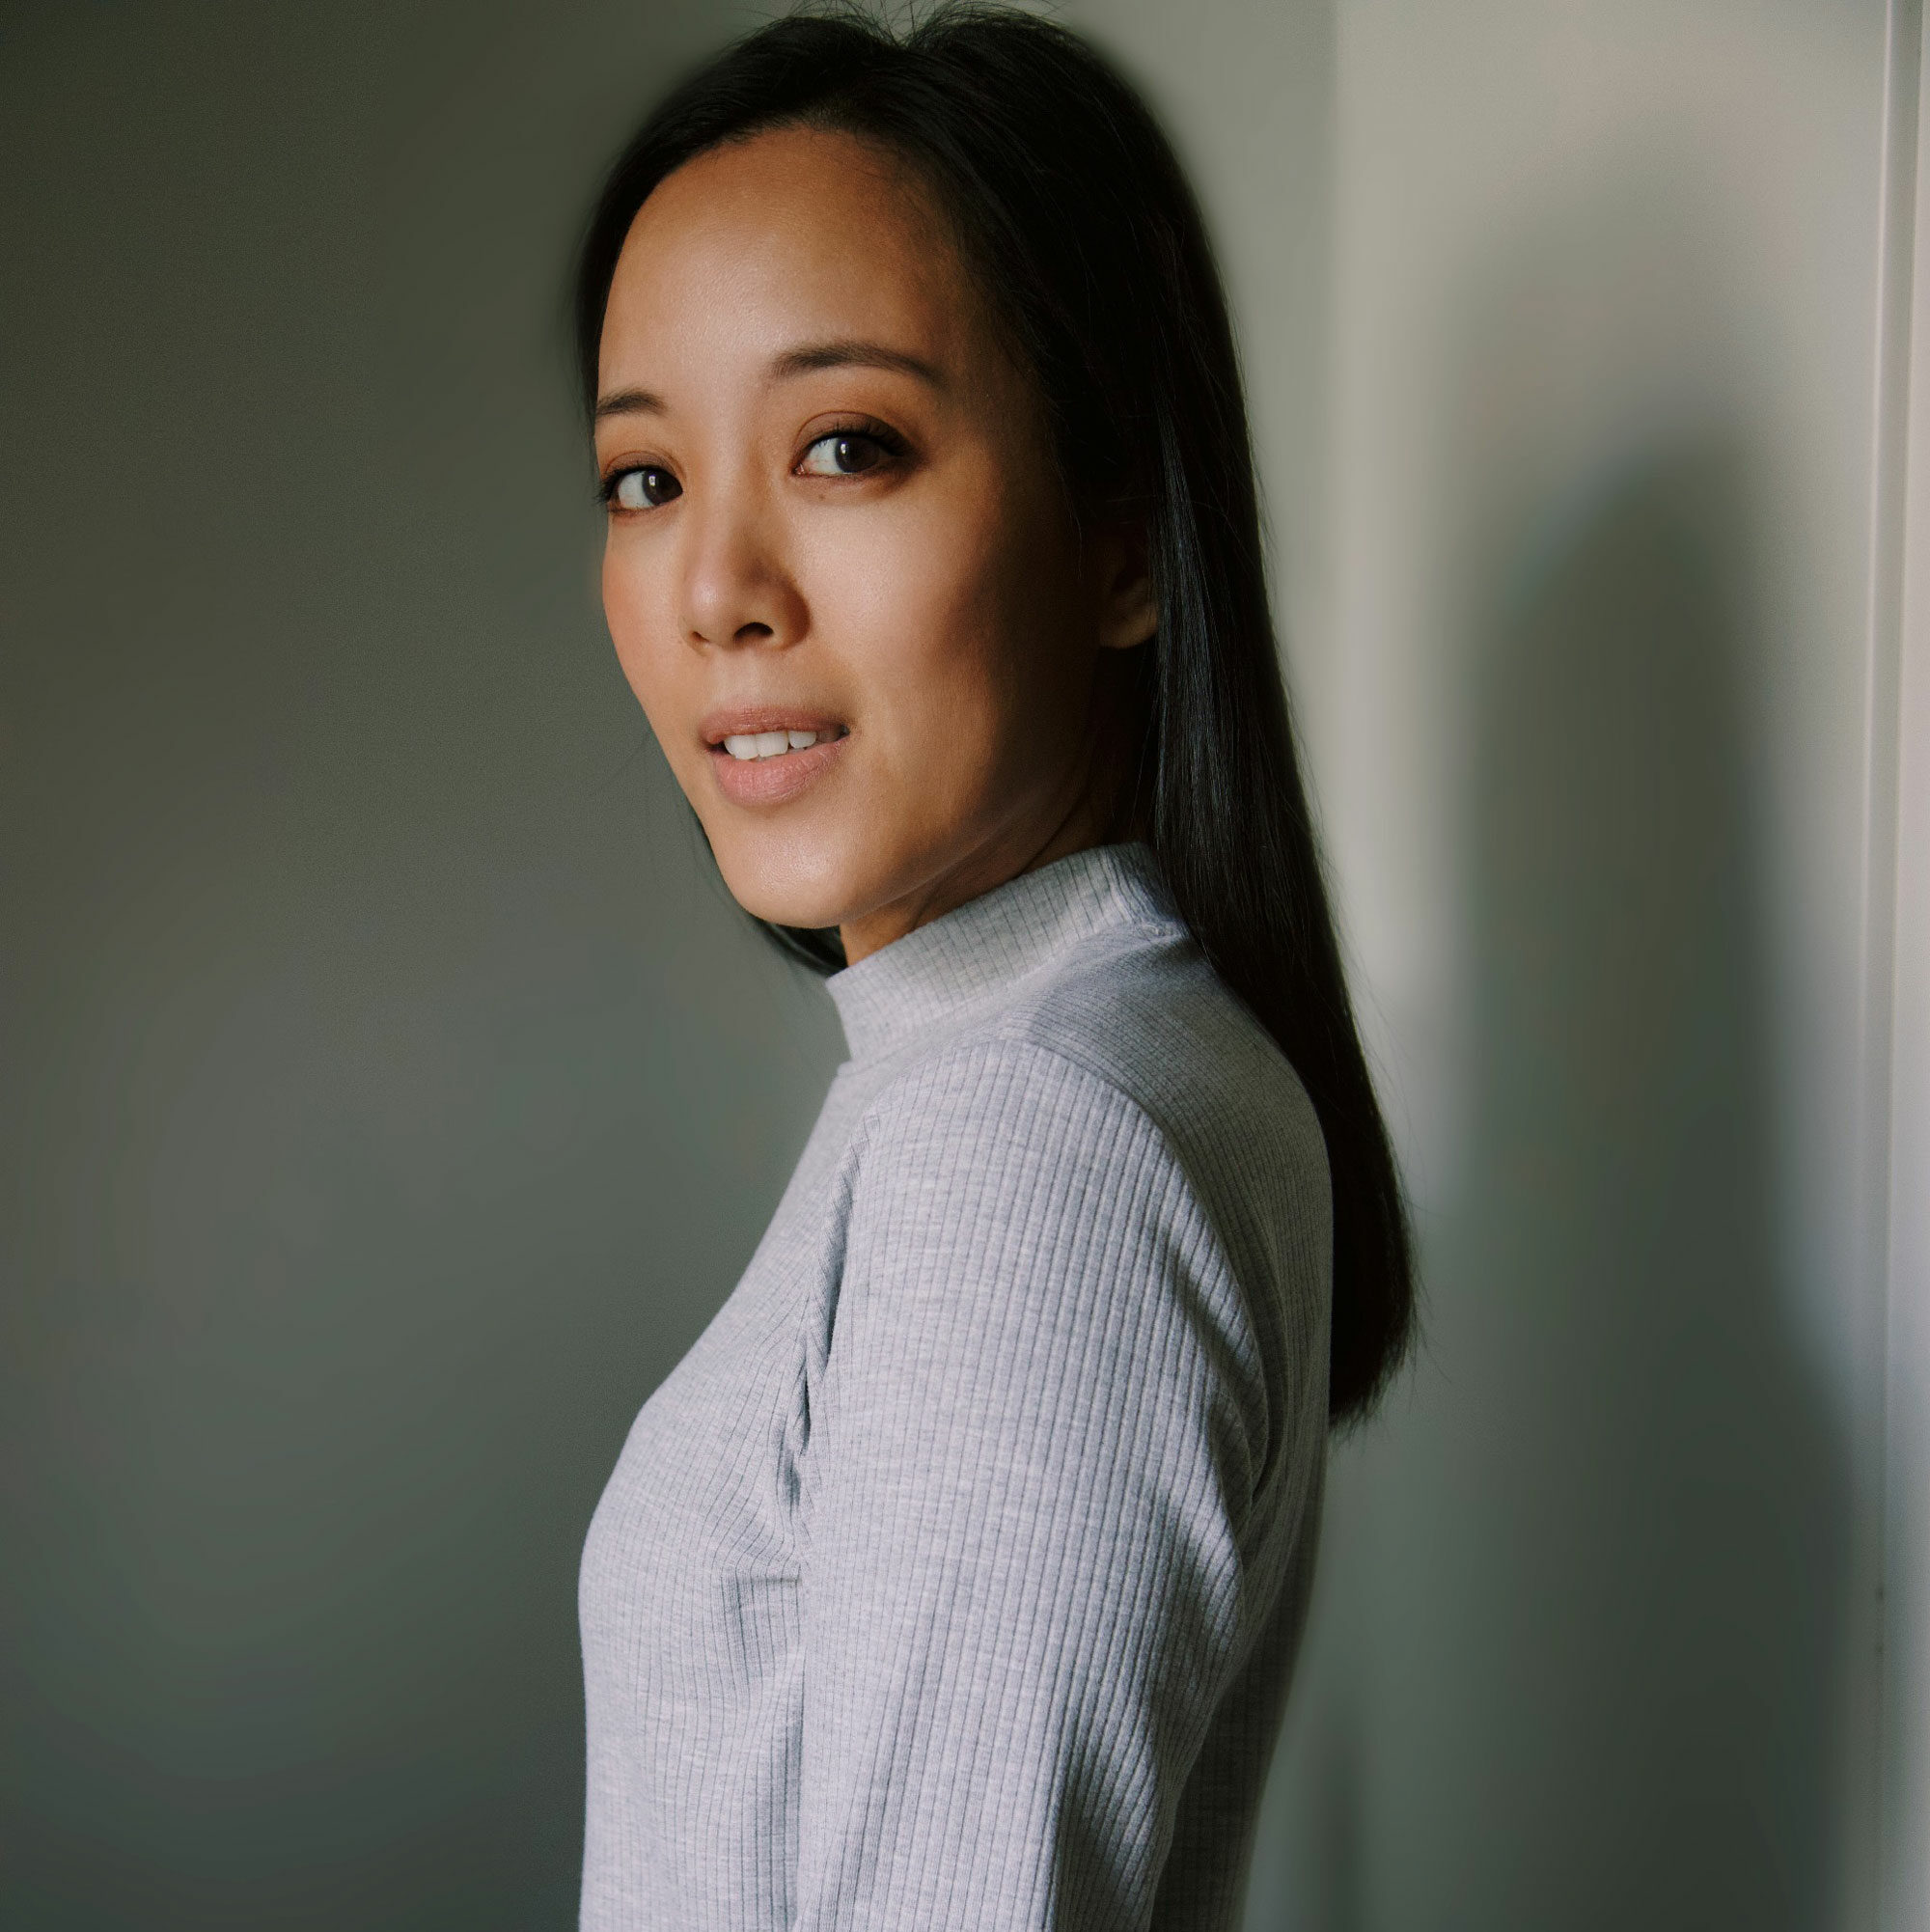 Profilbild von Designerin Giang Lu Kim, die seitlich steht und lächelt.